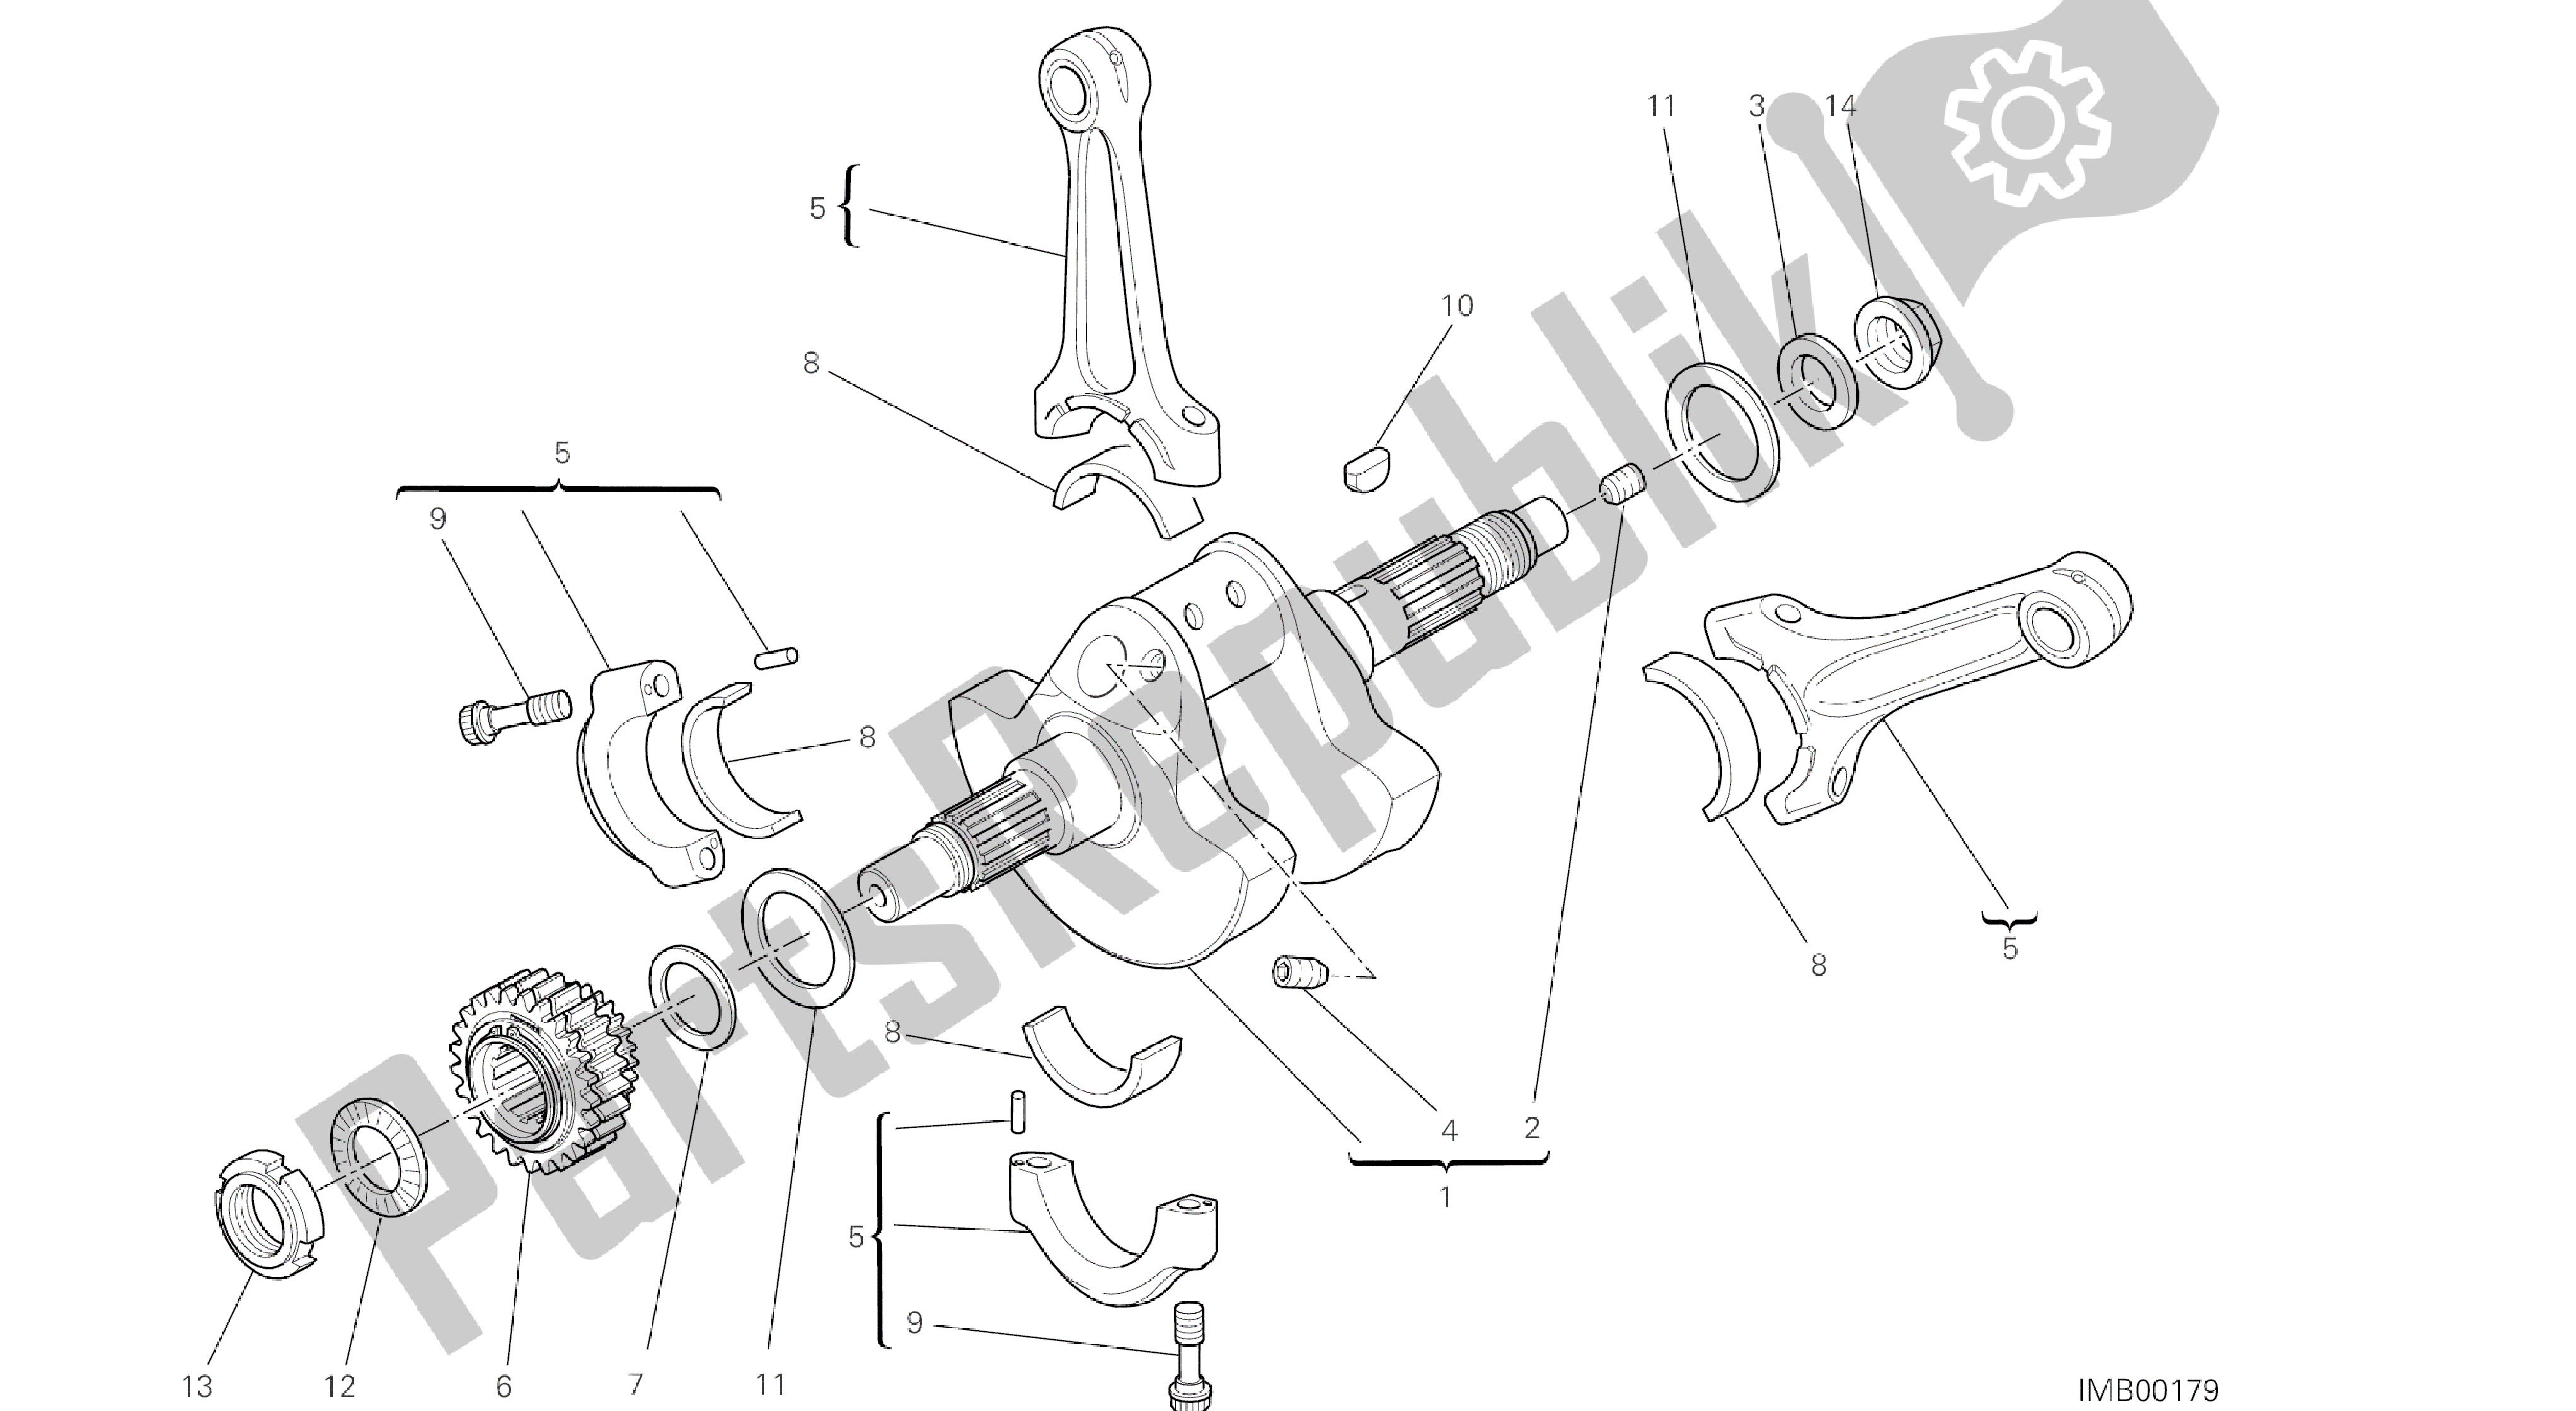 Tutte le parti per il Disegno 006 - Albero Motore [mod: Ms1200st; Xst: Aus, Chn, Eur, Fra, Jap, Tha] Gruppo Motore del Ducati Multistrada S Touring 1200 2014